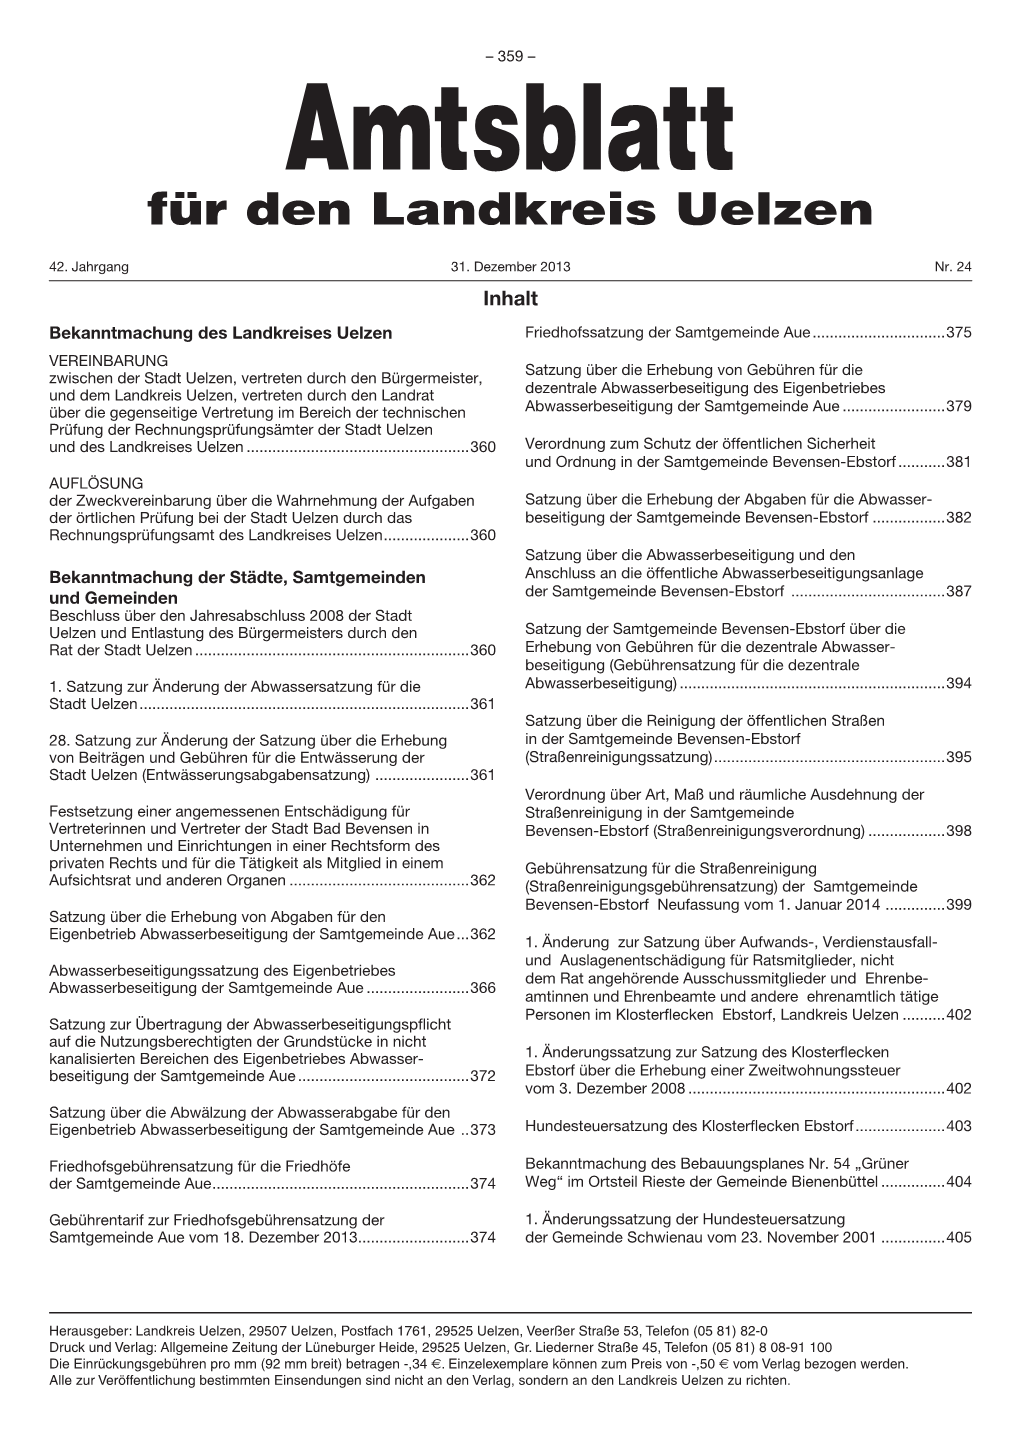 Amtsblatt Nr. 24 2013.Indd